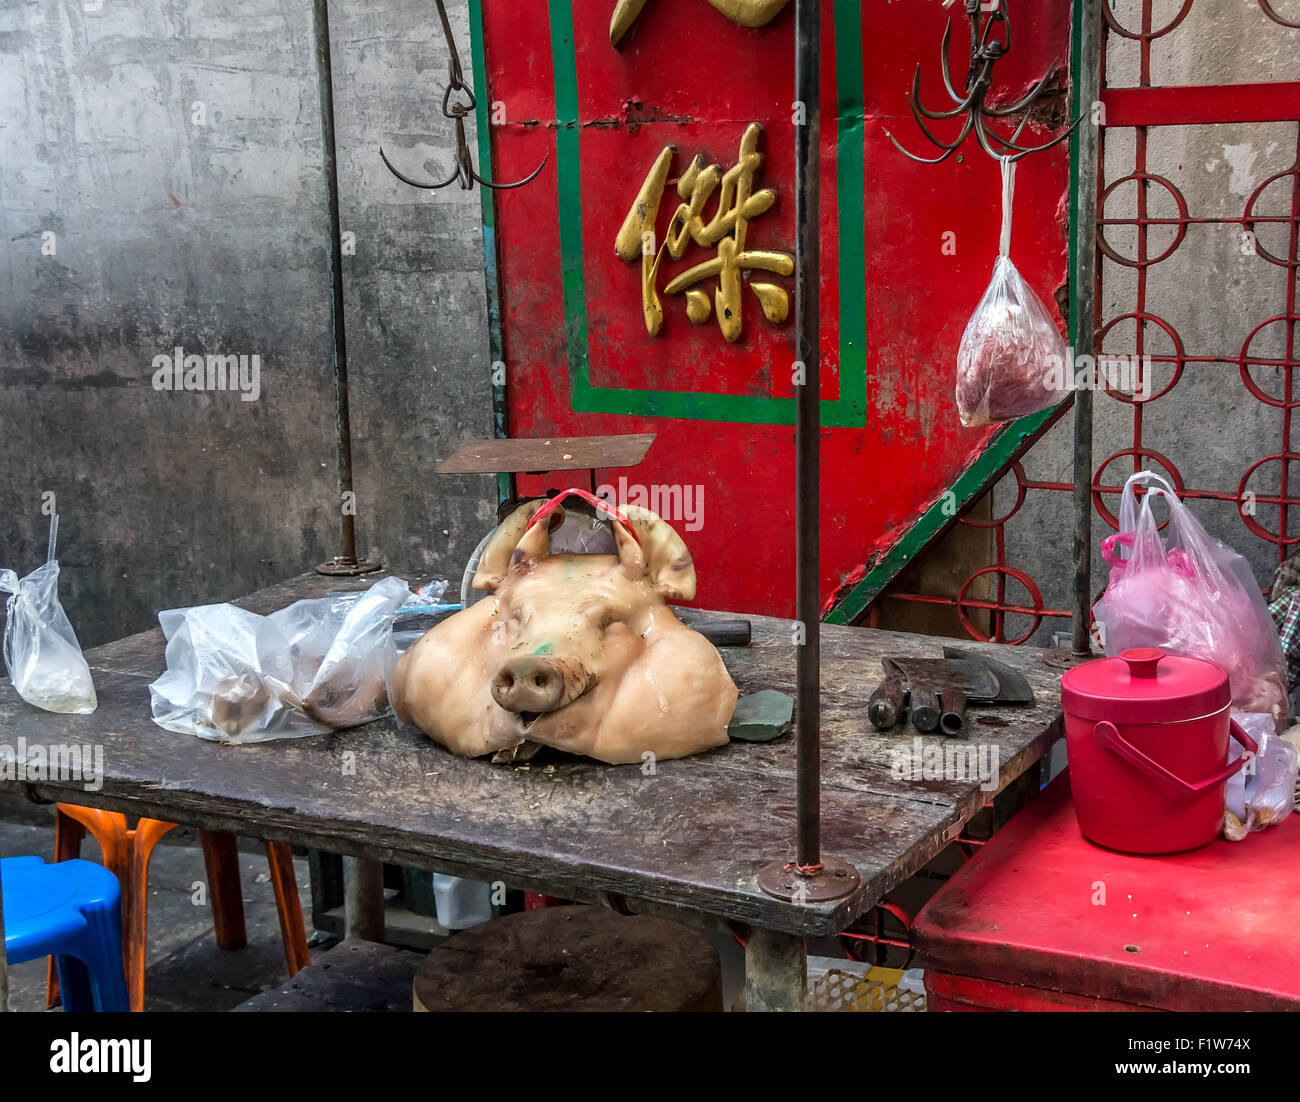 Marché de la viande de la rue avec une tête de porc dans une ruelle, Bangkok, Thaïlande. Banque D'Images